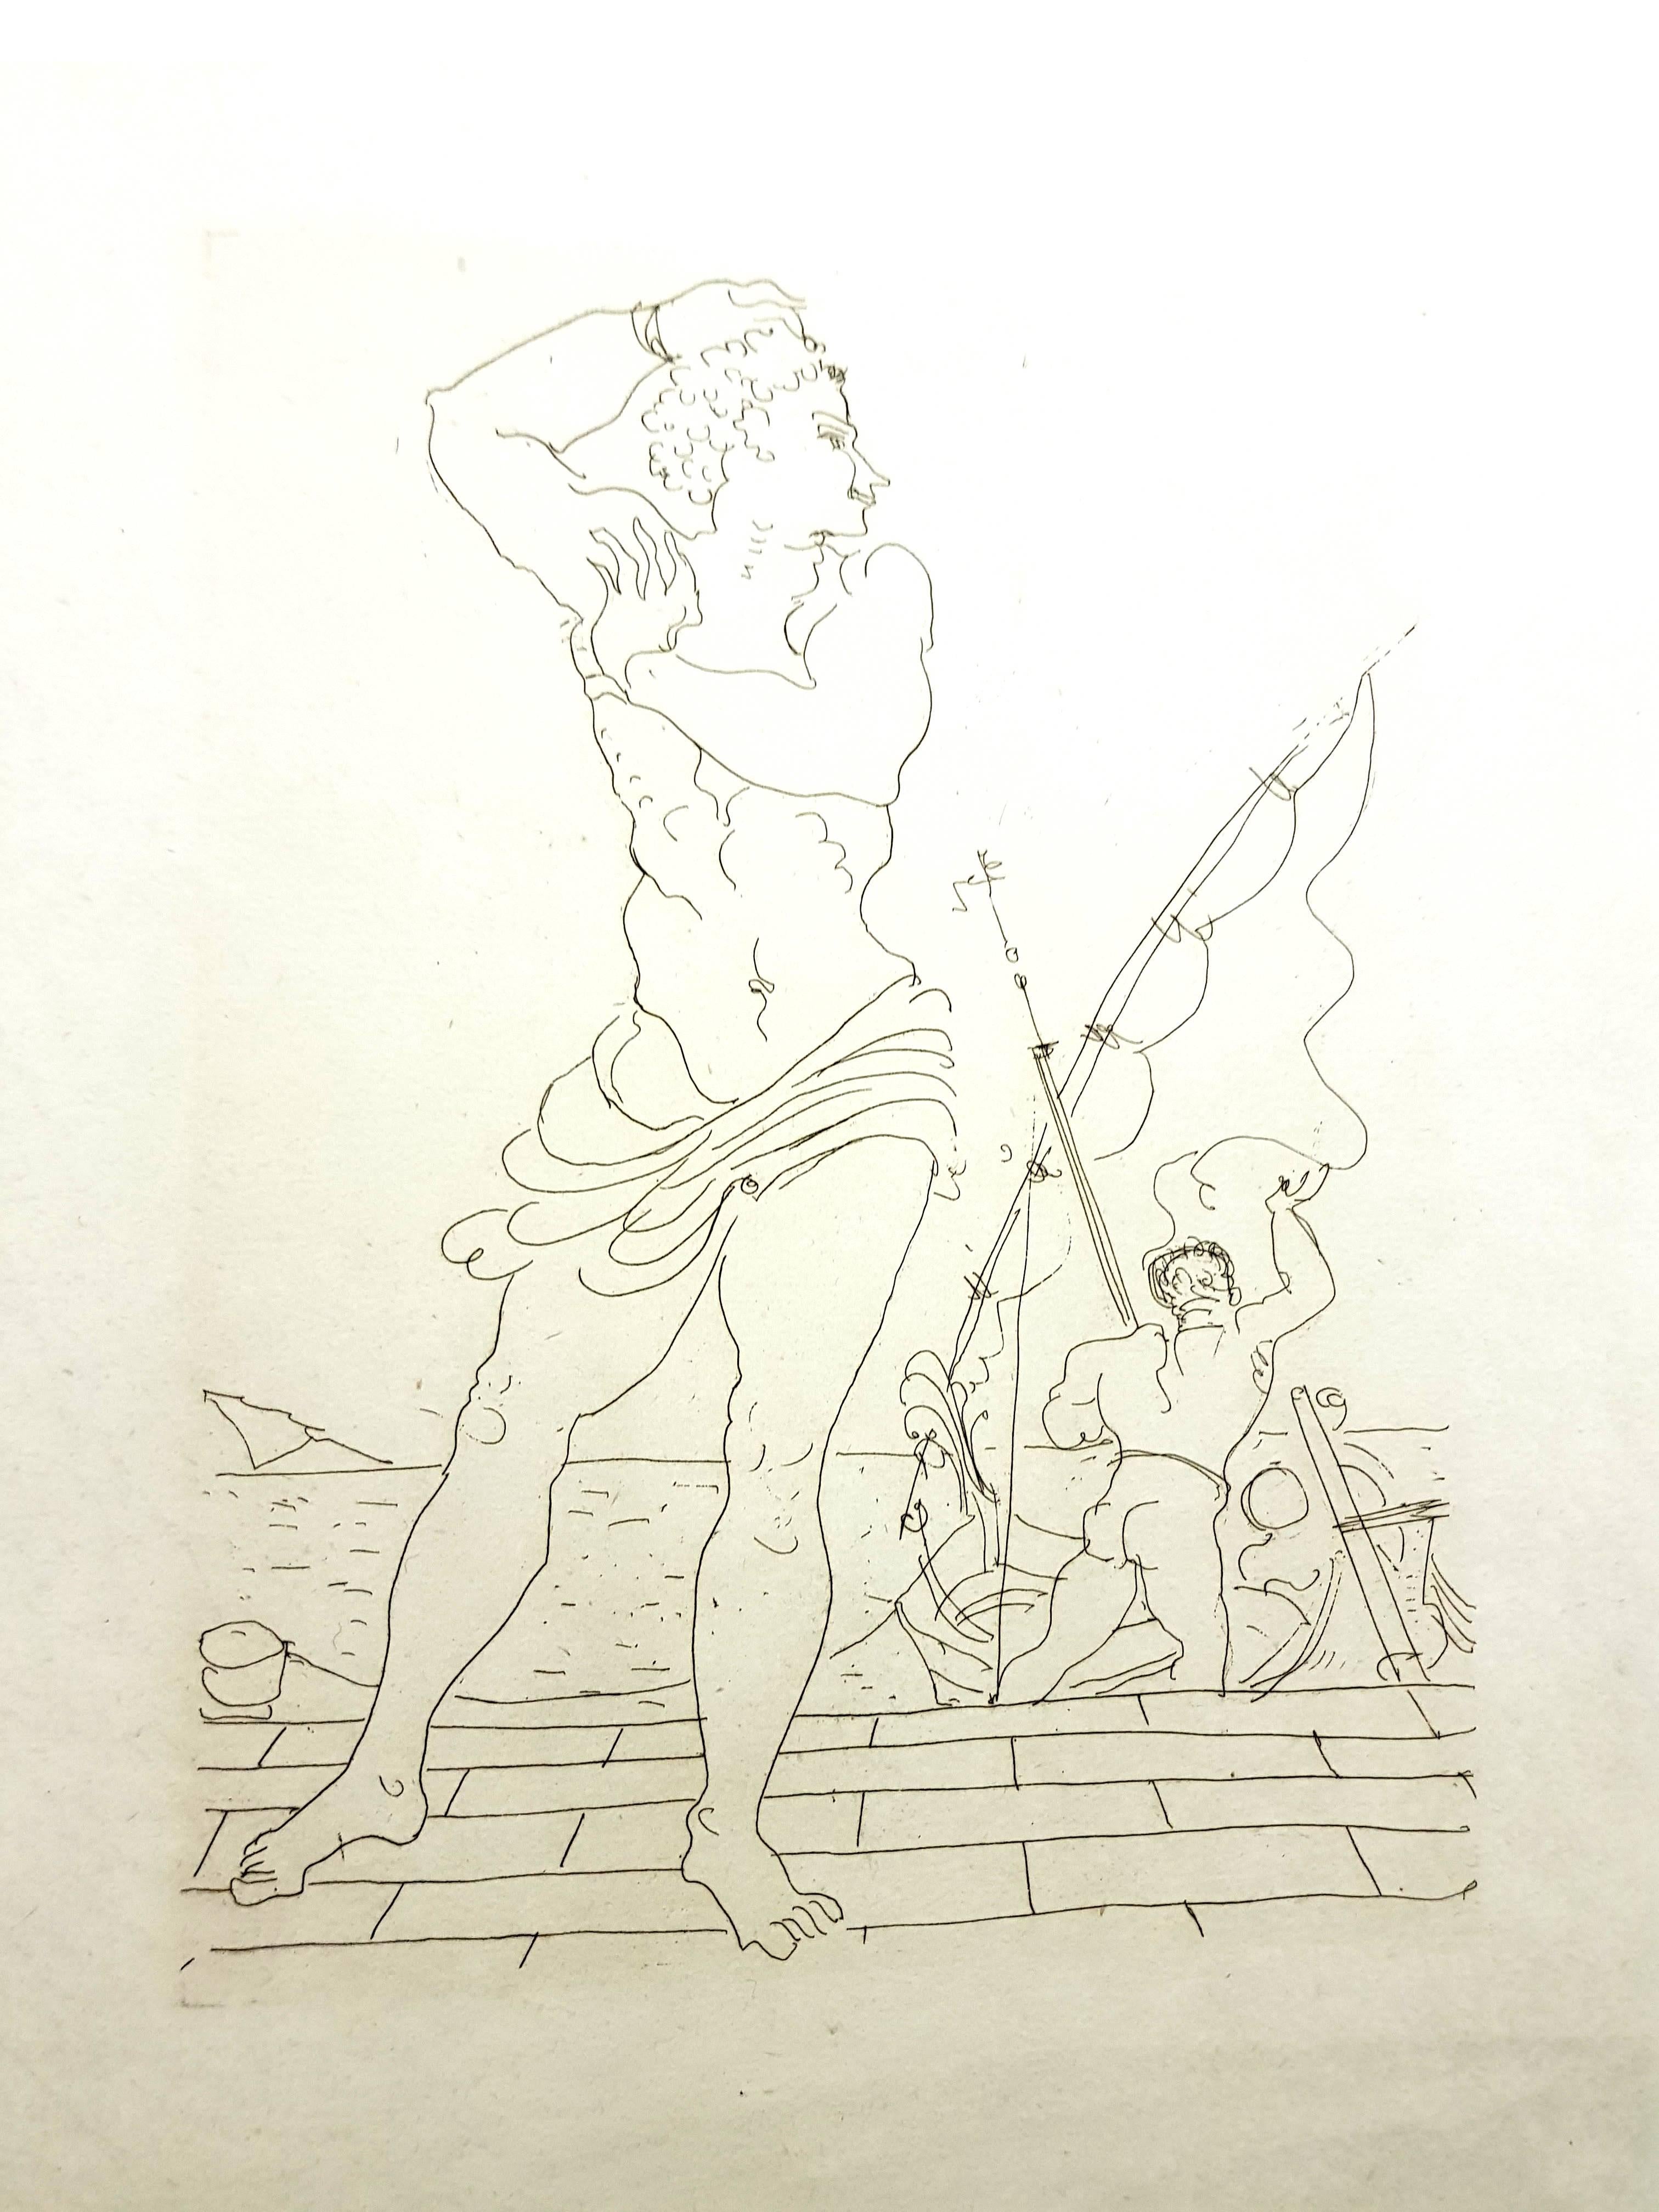 André Derain - Ovids Heroides 
Original-Radierung
Auflage von 134
Abmessungen: 32 x 25 cm
Ovide [Marcel Prevost], Héroïdes, Paris, Société des Cent-une, 1938
Unsigniert und nicht nummeriert wie ausgegeben